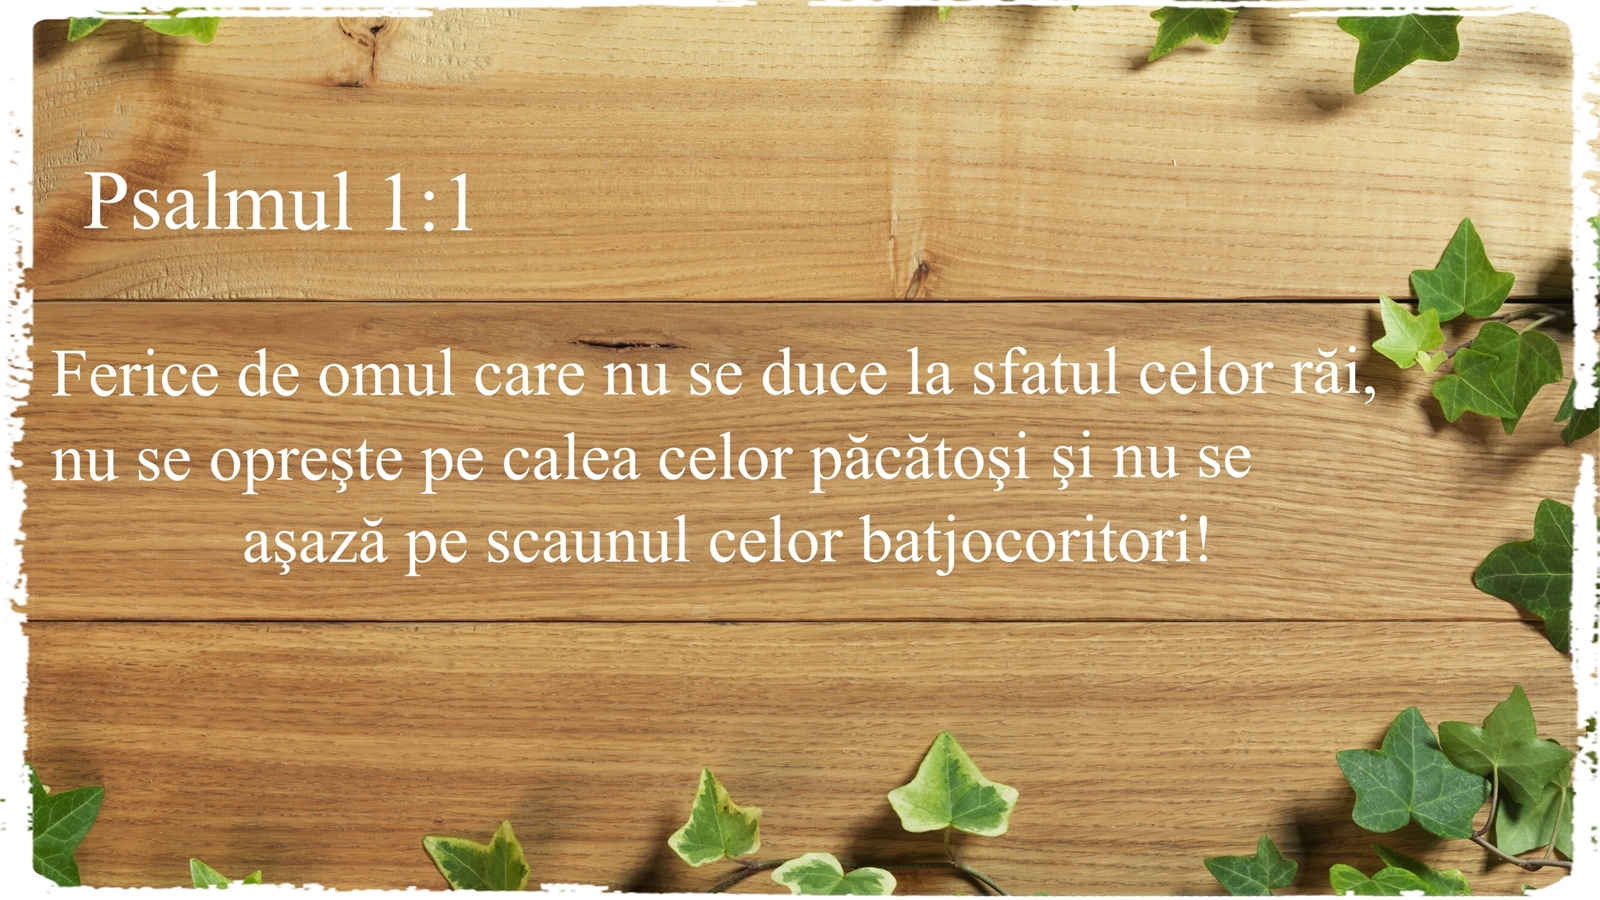 Psalmul 1 v1